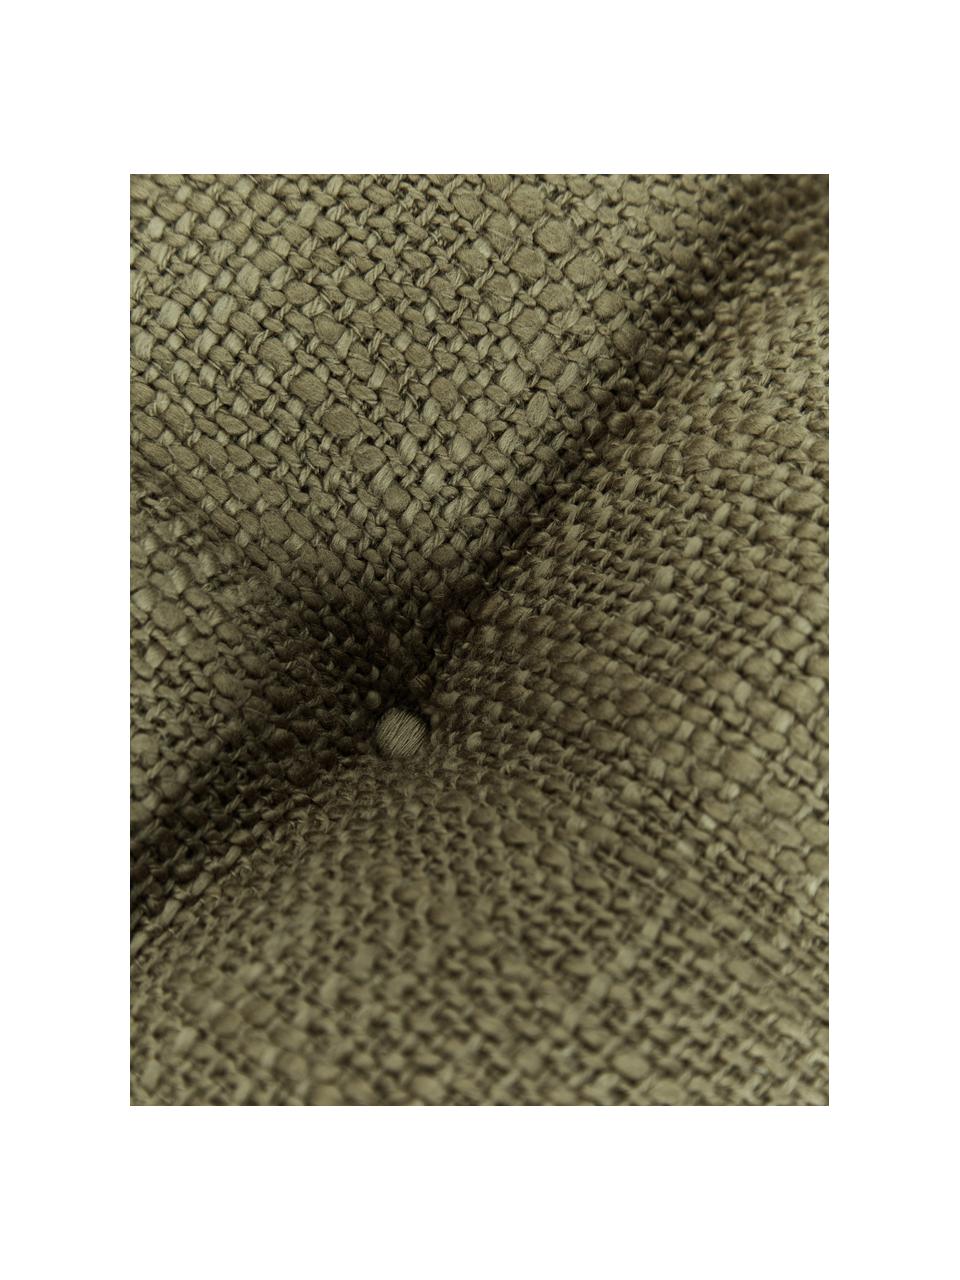 Coussin de chaise en coton Sasha, Vert olive, larg. 40 x long. 40 cm